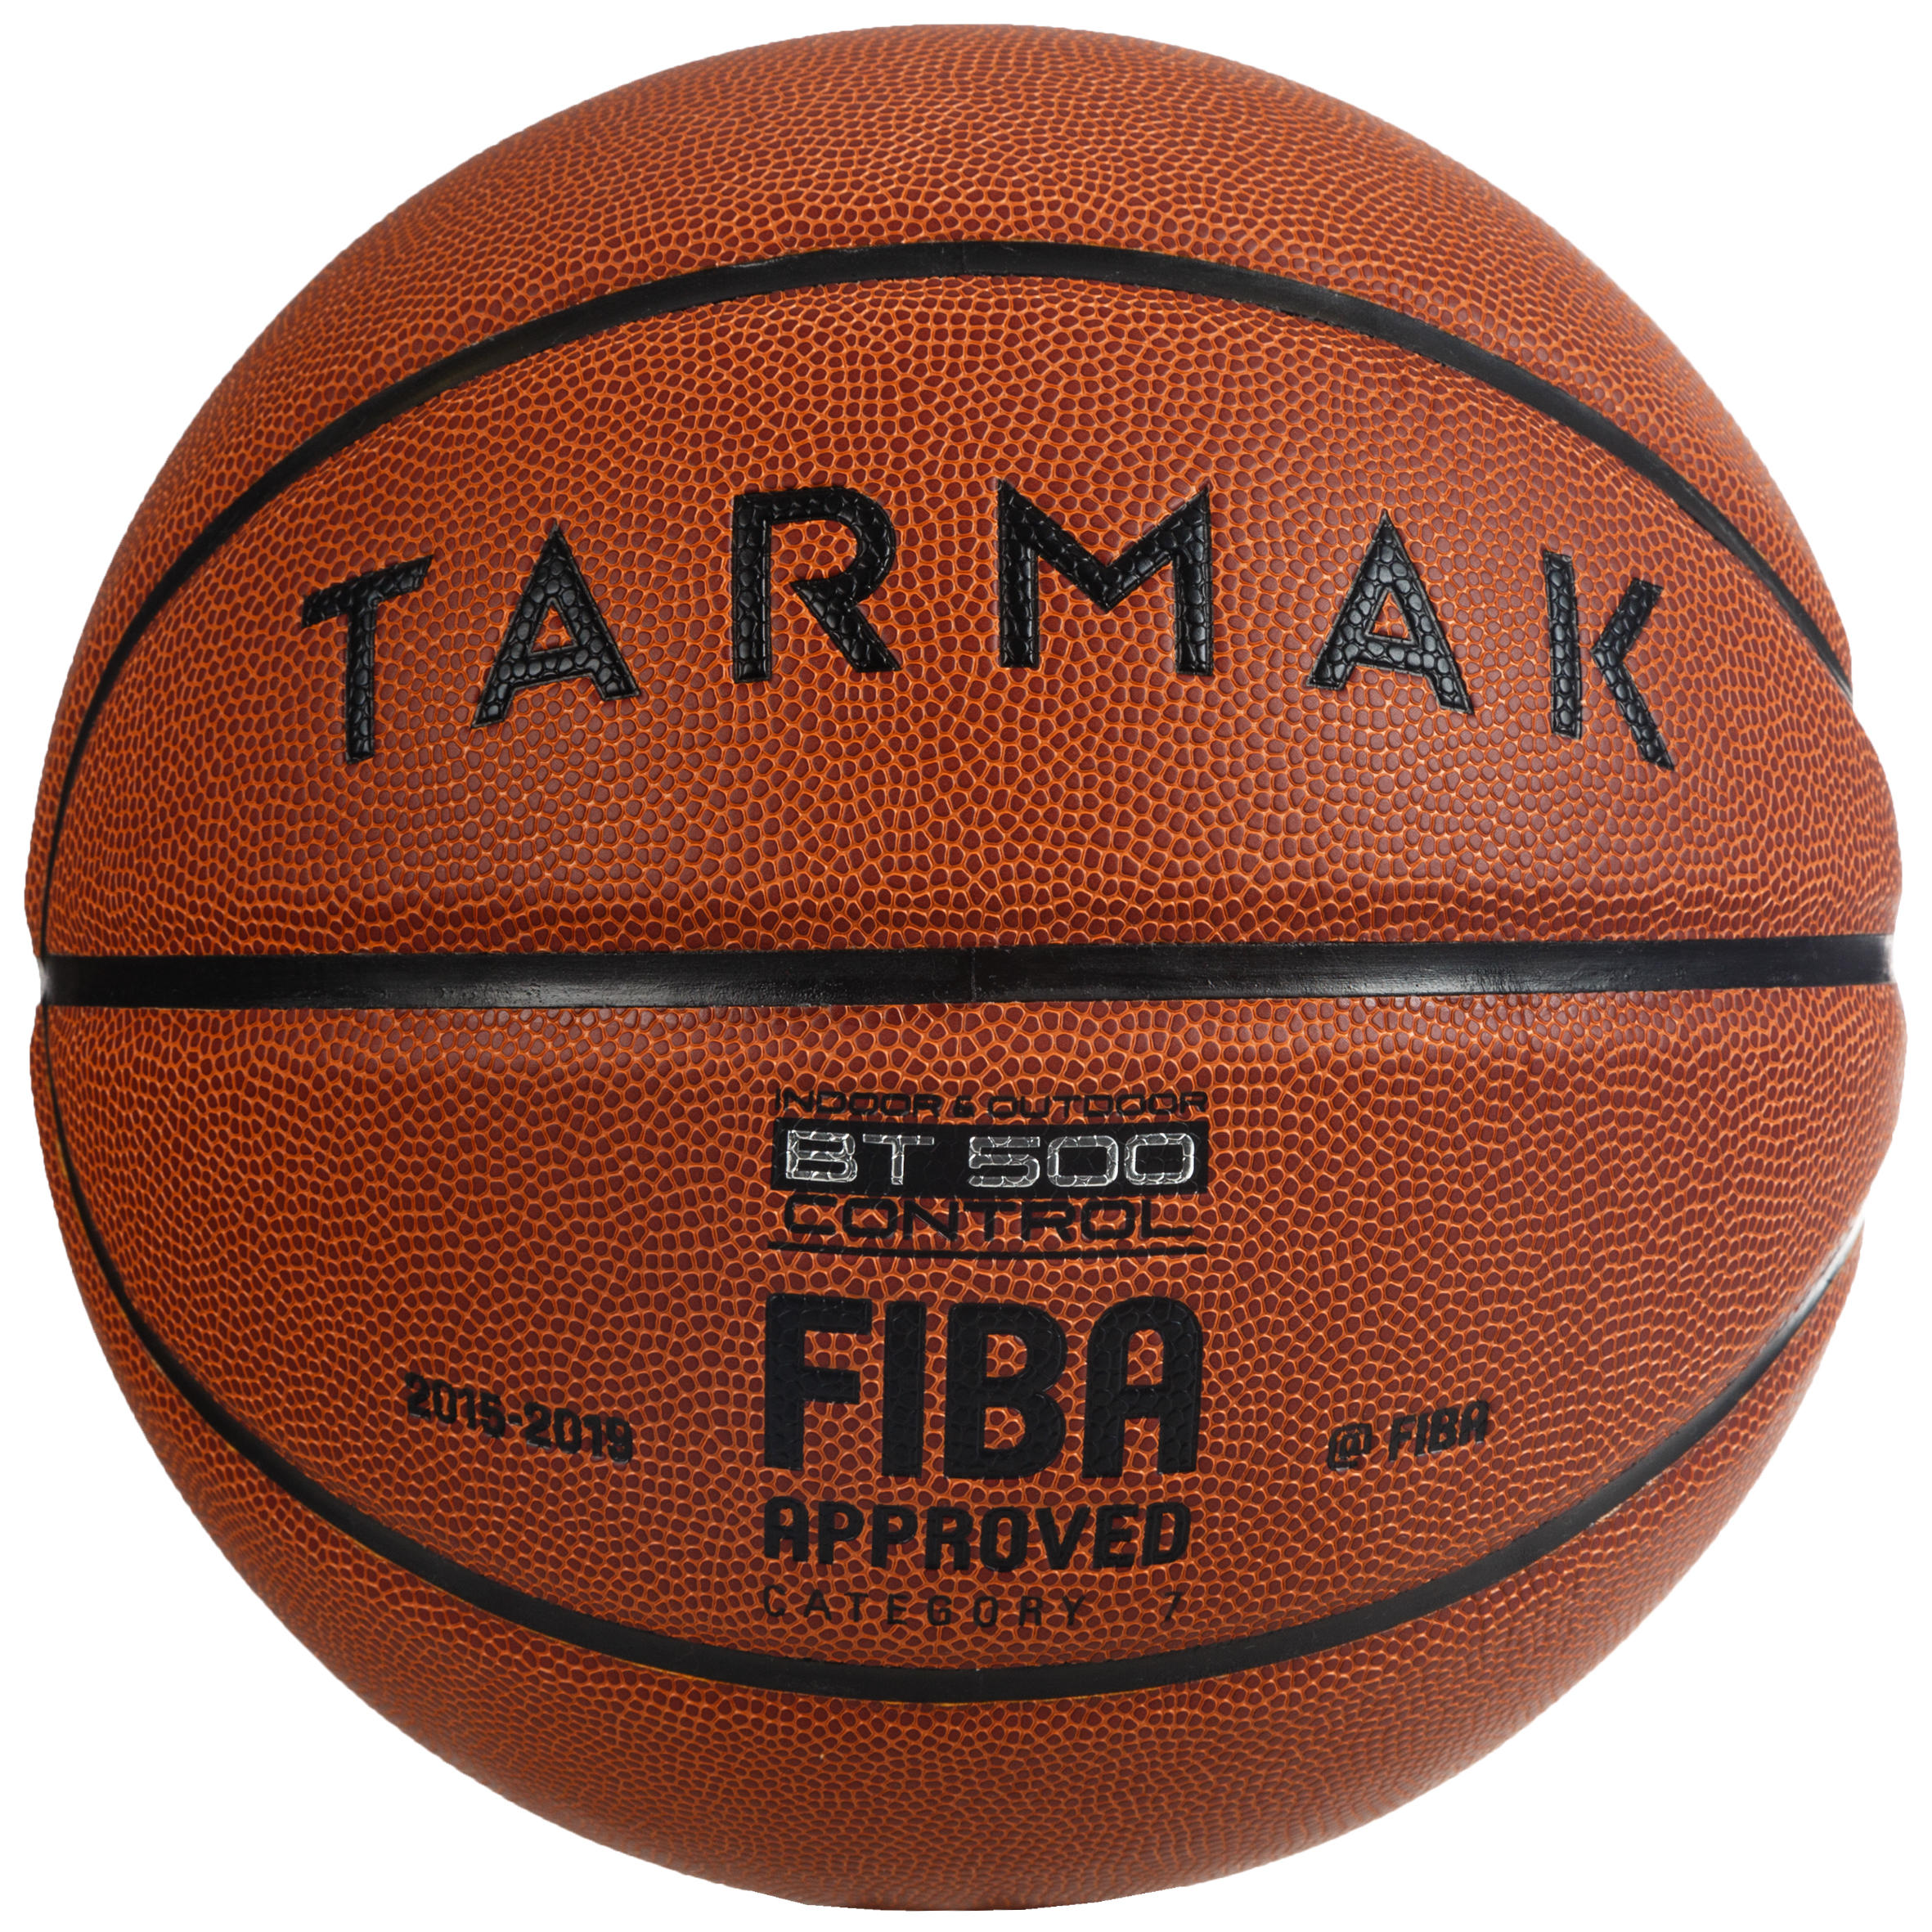 [ส่งฟรี ] ลูกบาสเกตบอล🏀 รุ่น BT500 FIBA เบอร์ 7 (สีน้ำตาล) มาตราฐาน FIBA สำหรับผู้ใหญ่ Basketball Ball 🏀 Boys'/Men's Size 7 (from 13 Years) Basketball BT500 - Brown/Fiba. ลูกบาสเกตบอล 6 7